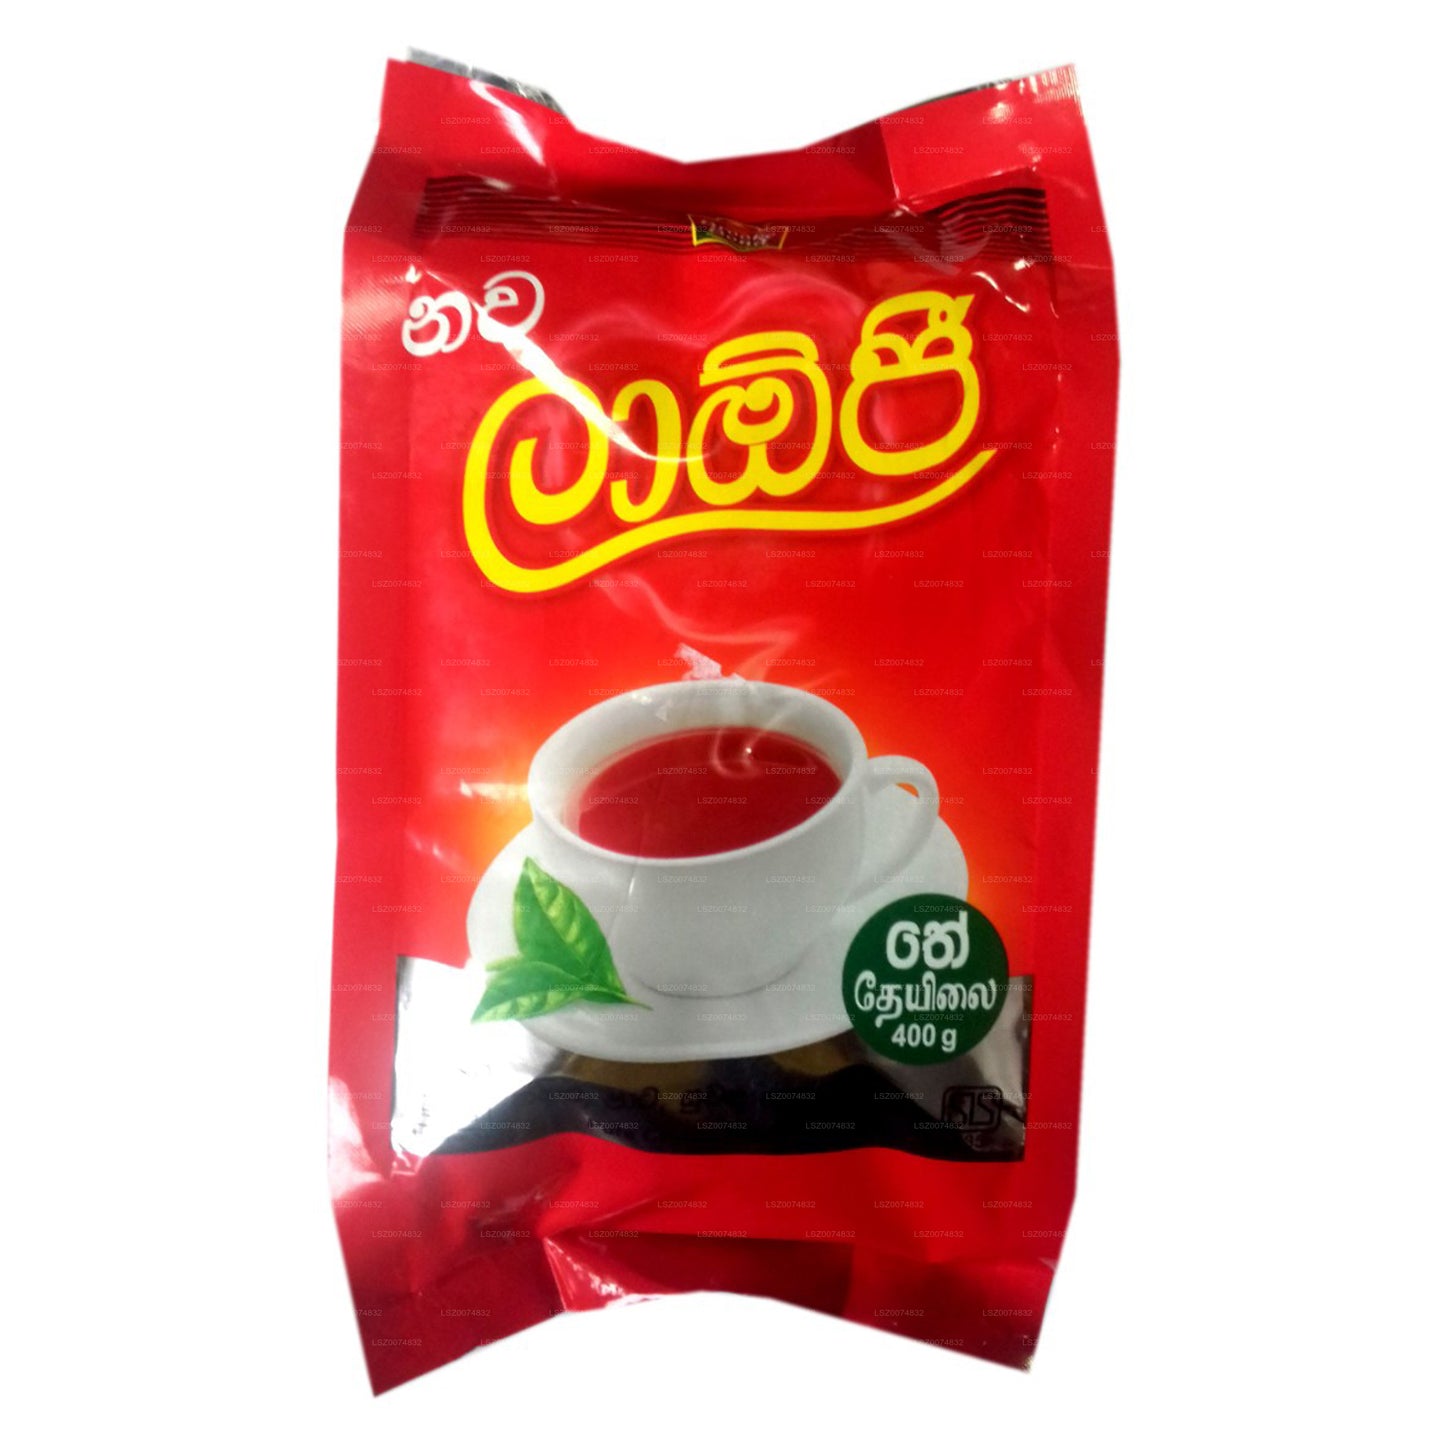 Laojee 纯锡兰红茶袋 (400 g)